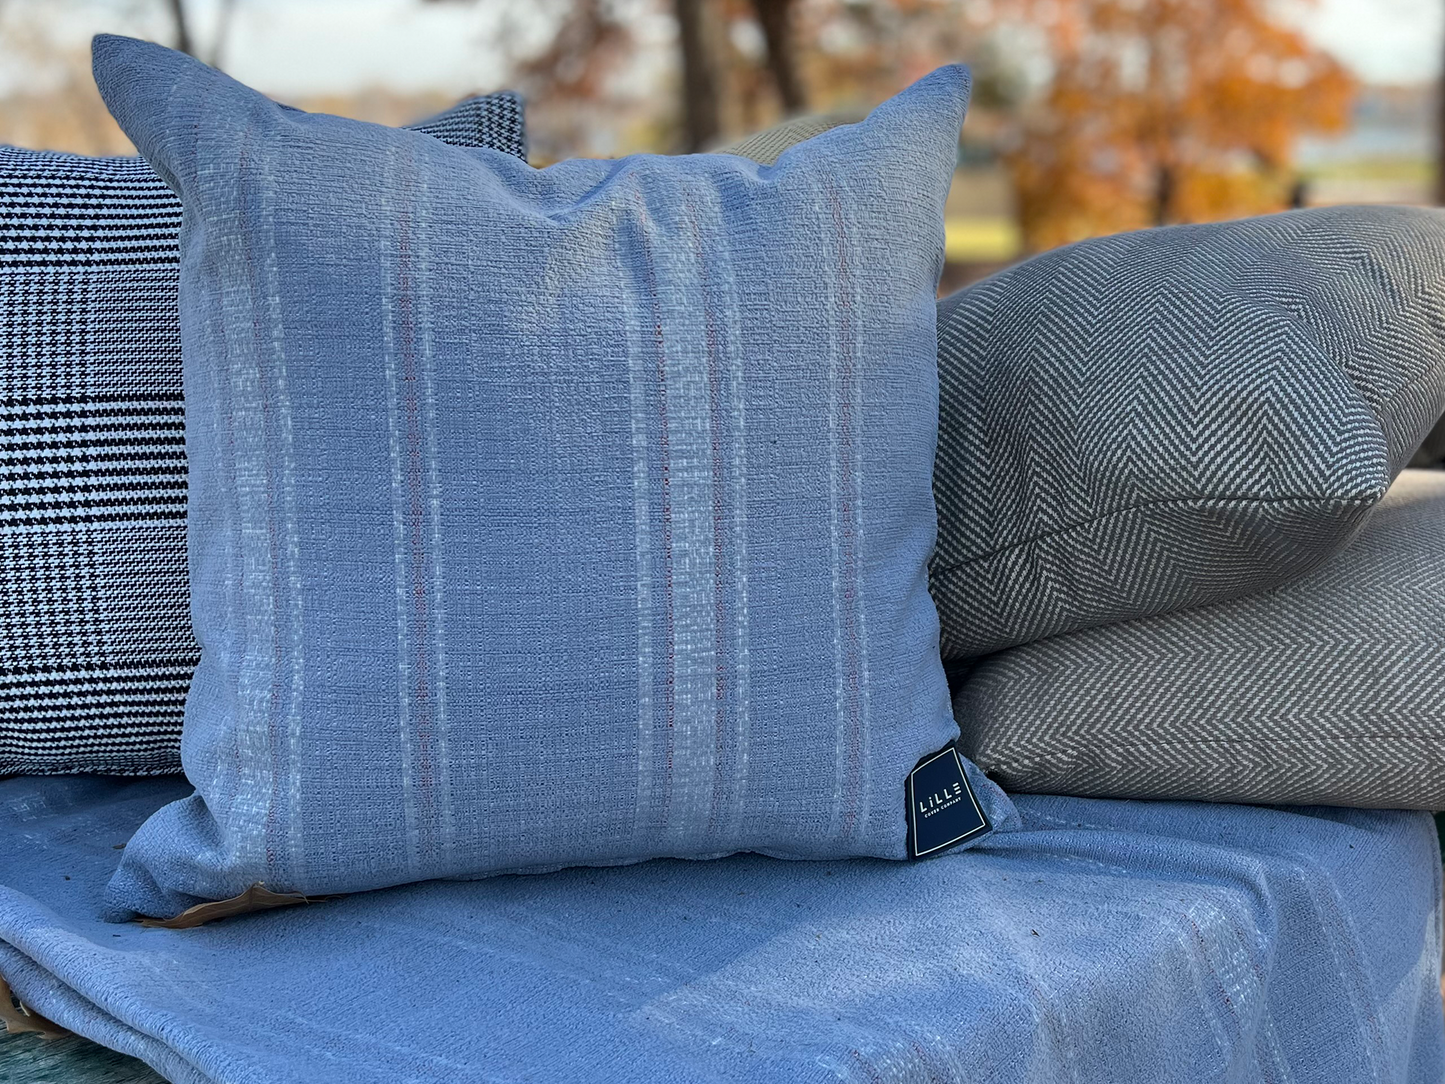 Aquinnah Water Resistant Indoor/Outdoor Pillow Covers (Set of 2)